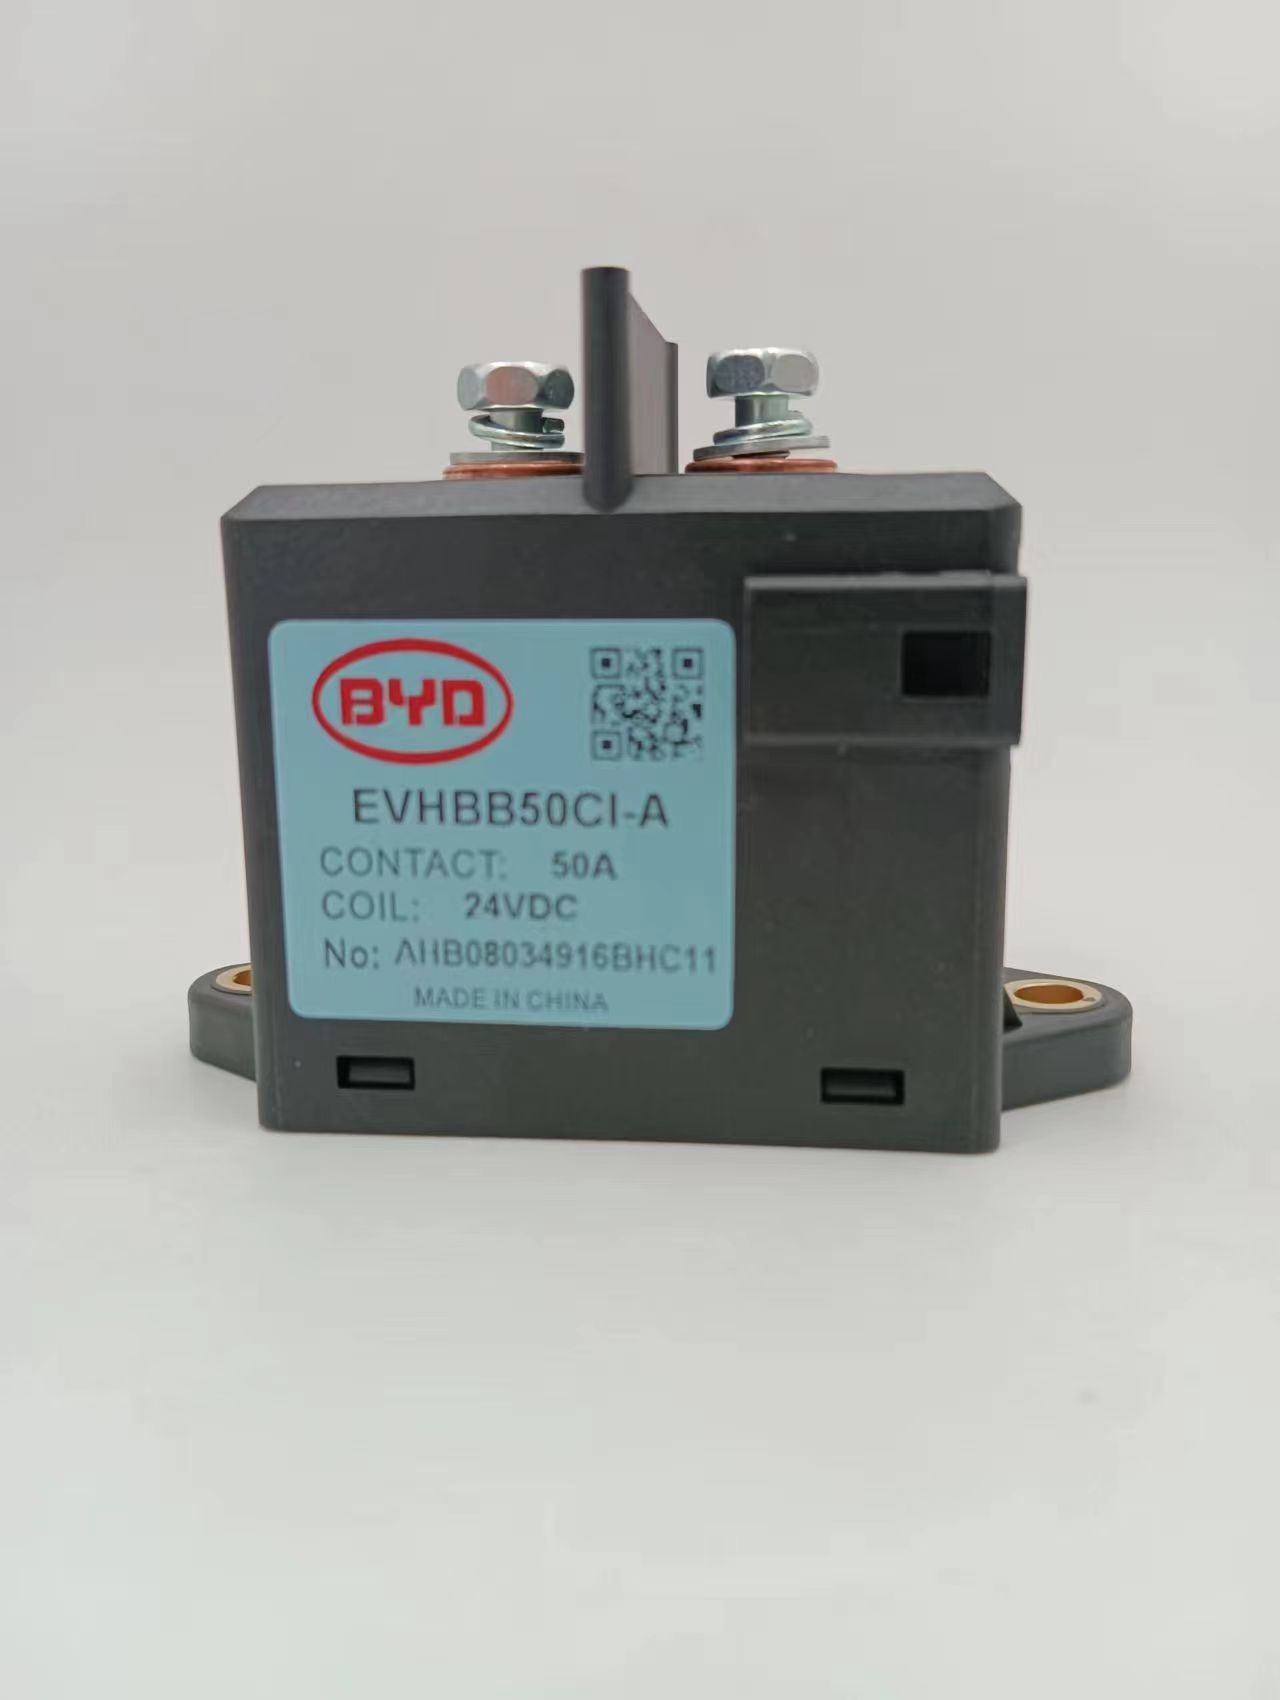 江苏EVHBCA500CI-A比亚迪BYD液压接触器原厂销售